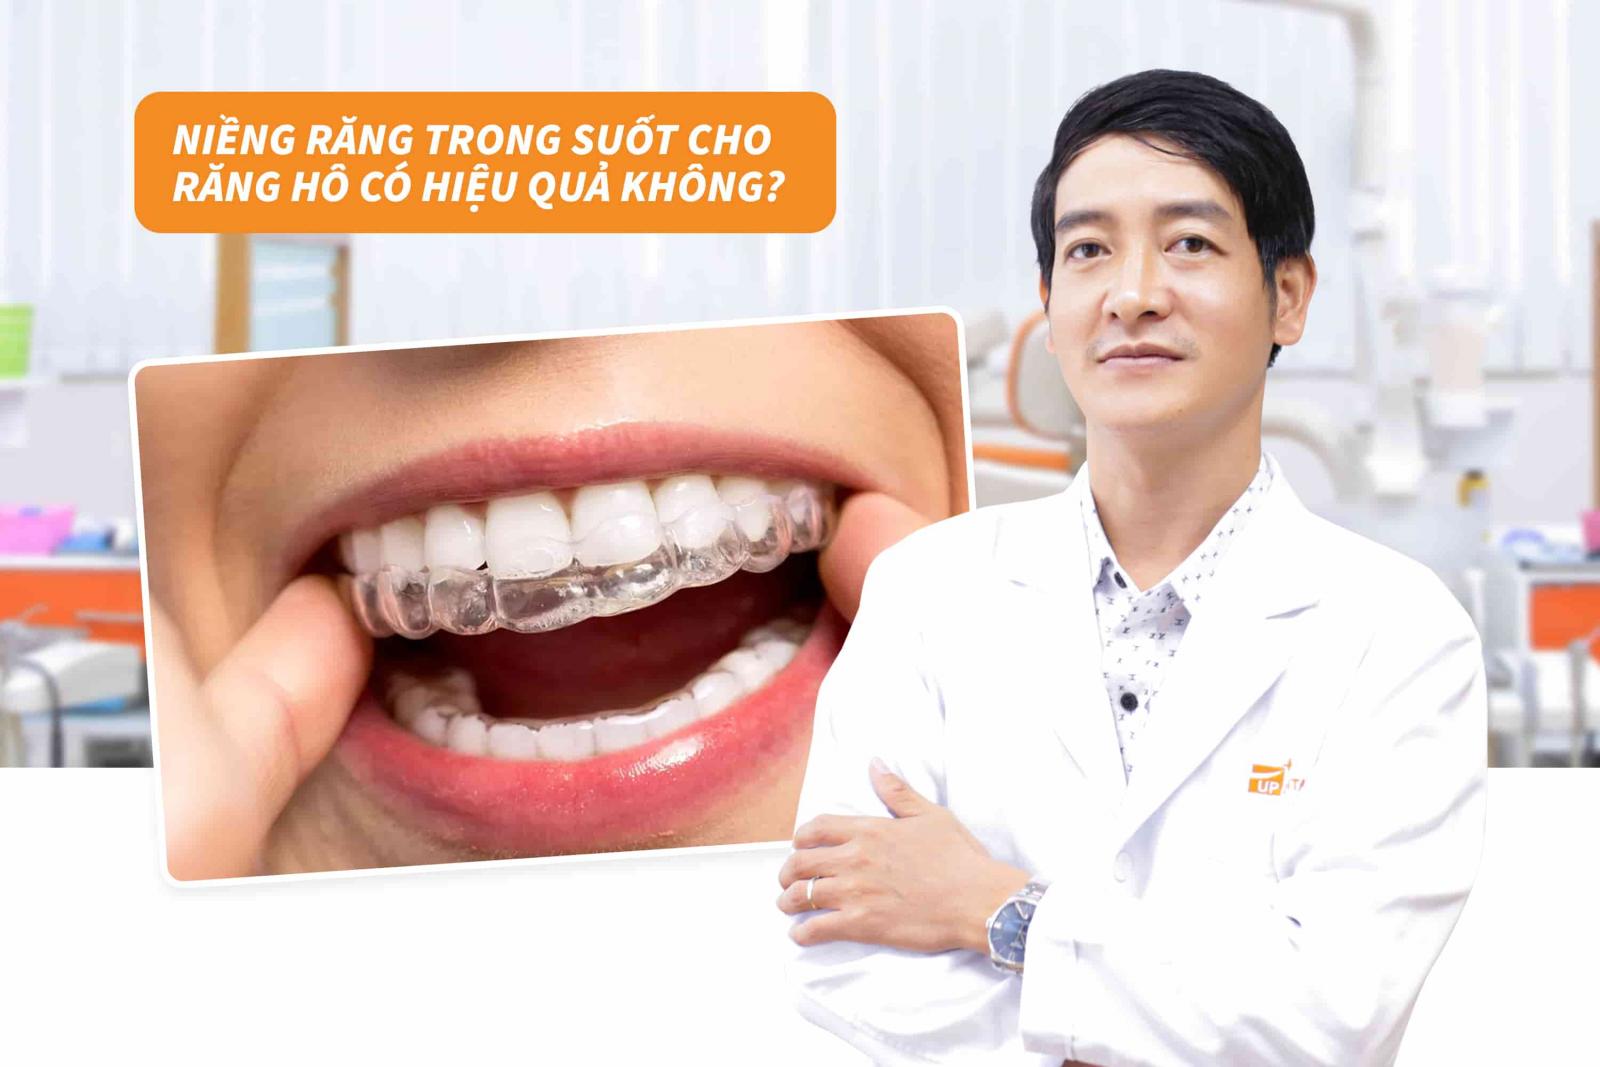 Niềng răng trong suốt cho răng hô có hiệu quả không?